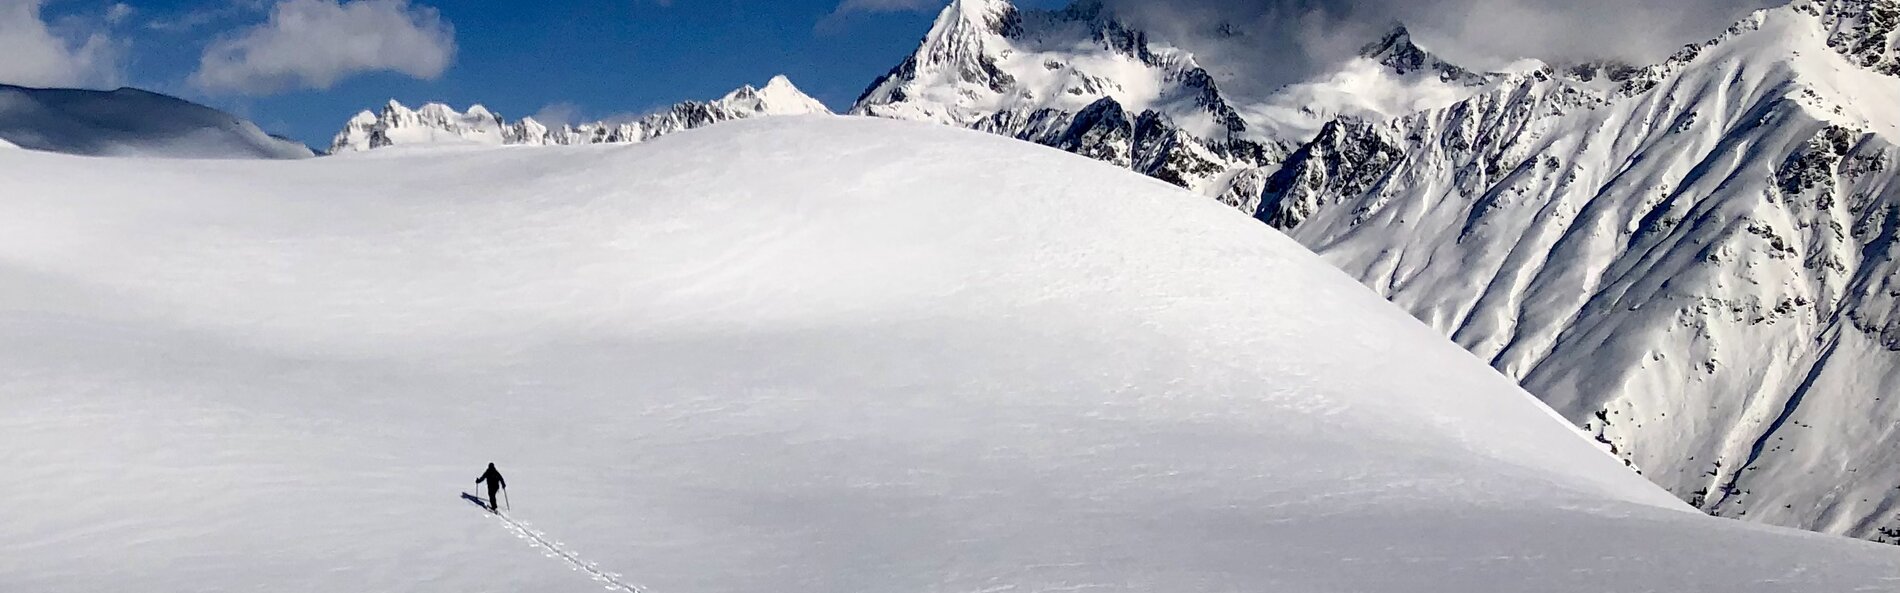 Skitourengeher im Aufstieg auf einer eibgeschneiten Bergflanke mit weißen Bergen im Hintergrund ©Thomas Zimmermann